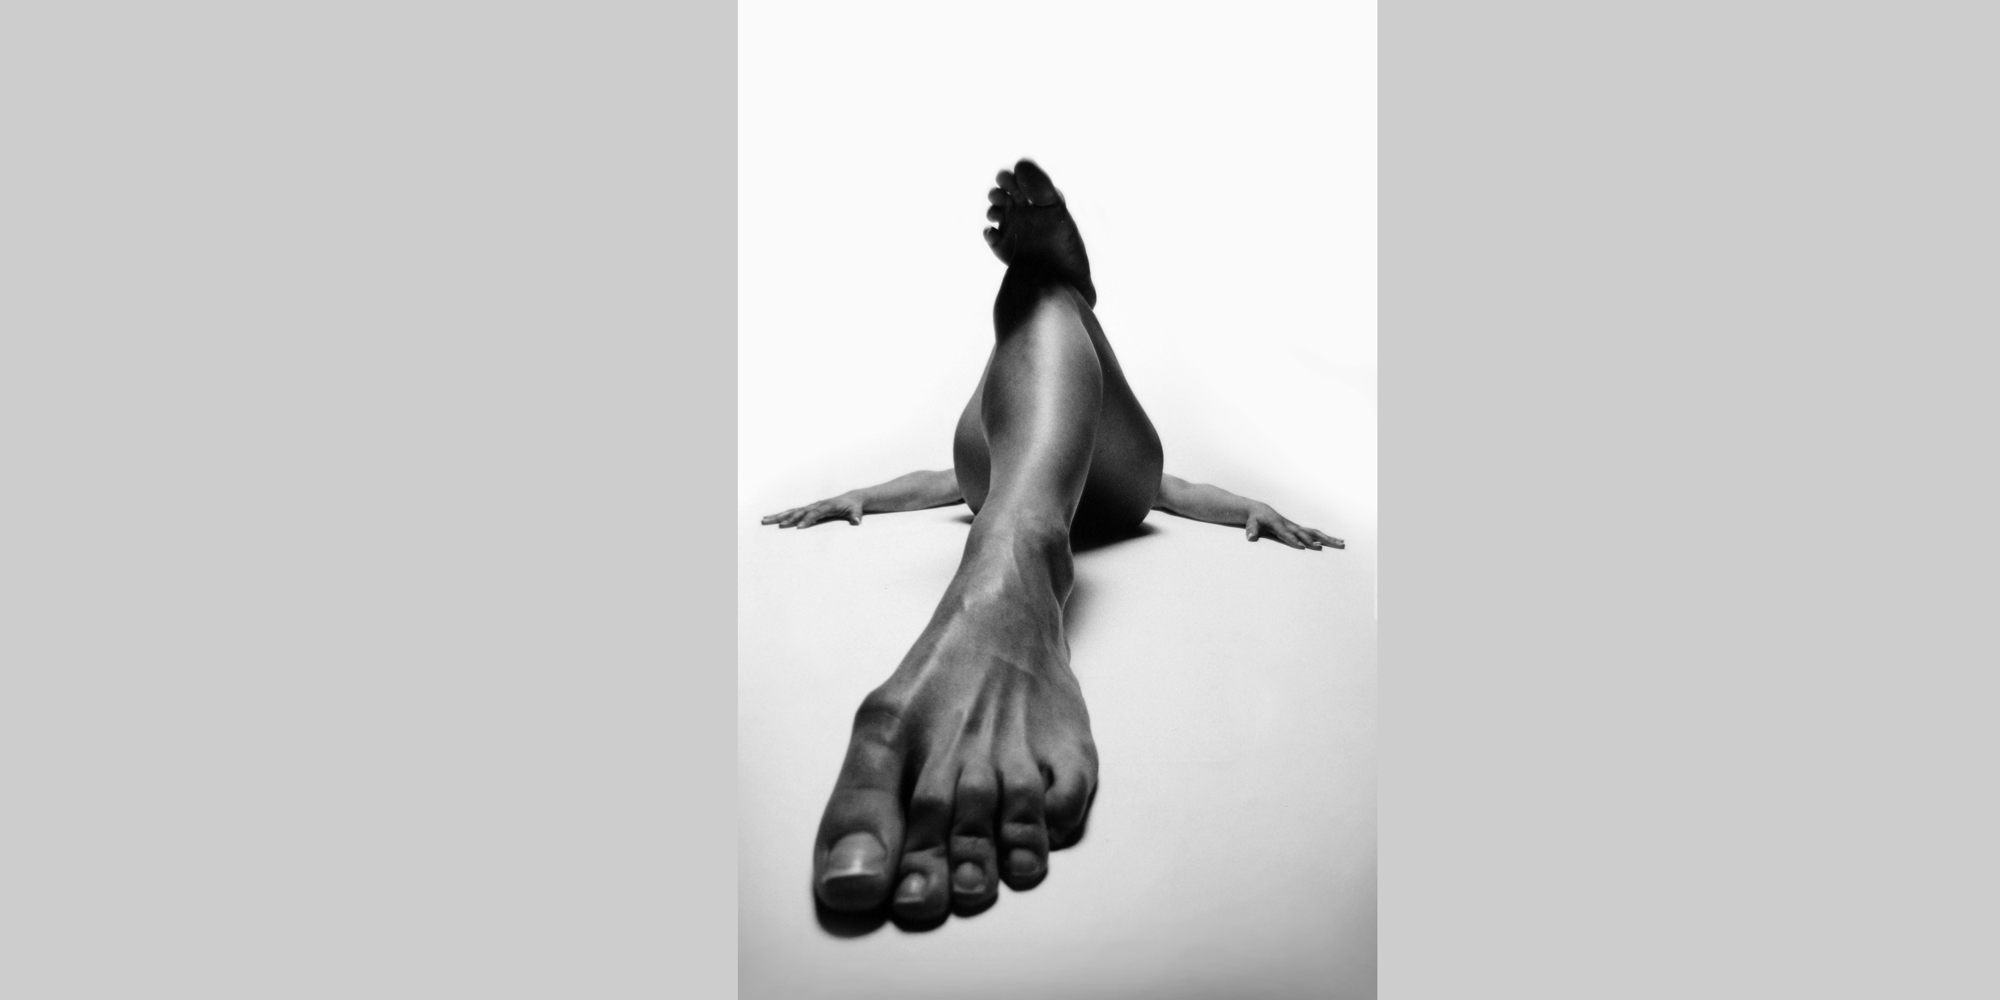 Frontale schwarz-weiße Ansicht einer liegenden, nackten Frau mit seitlich abgelegten Armen und ausgestrecktem Bein, wodurch ihr Fuß überdimensional groß wirkt, sie posiert für ästhetische erotische Aktfotografie.